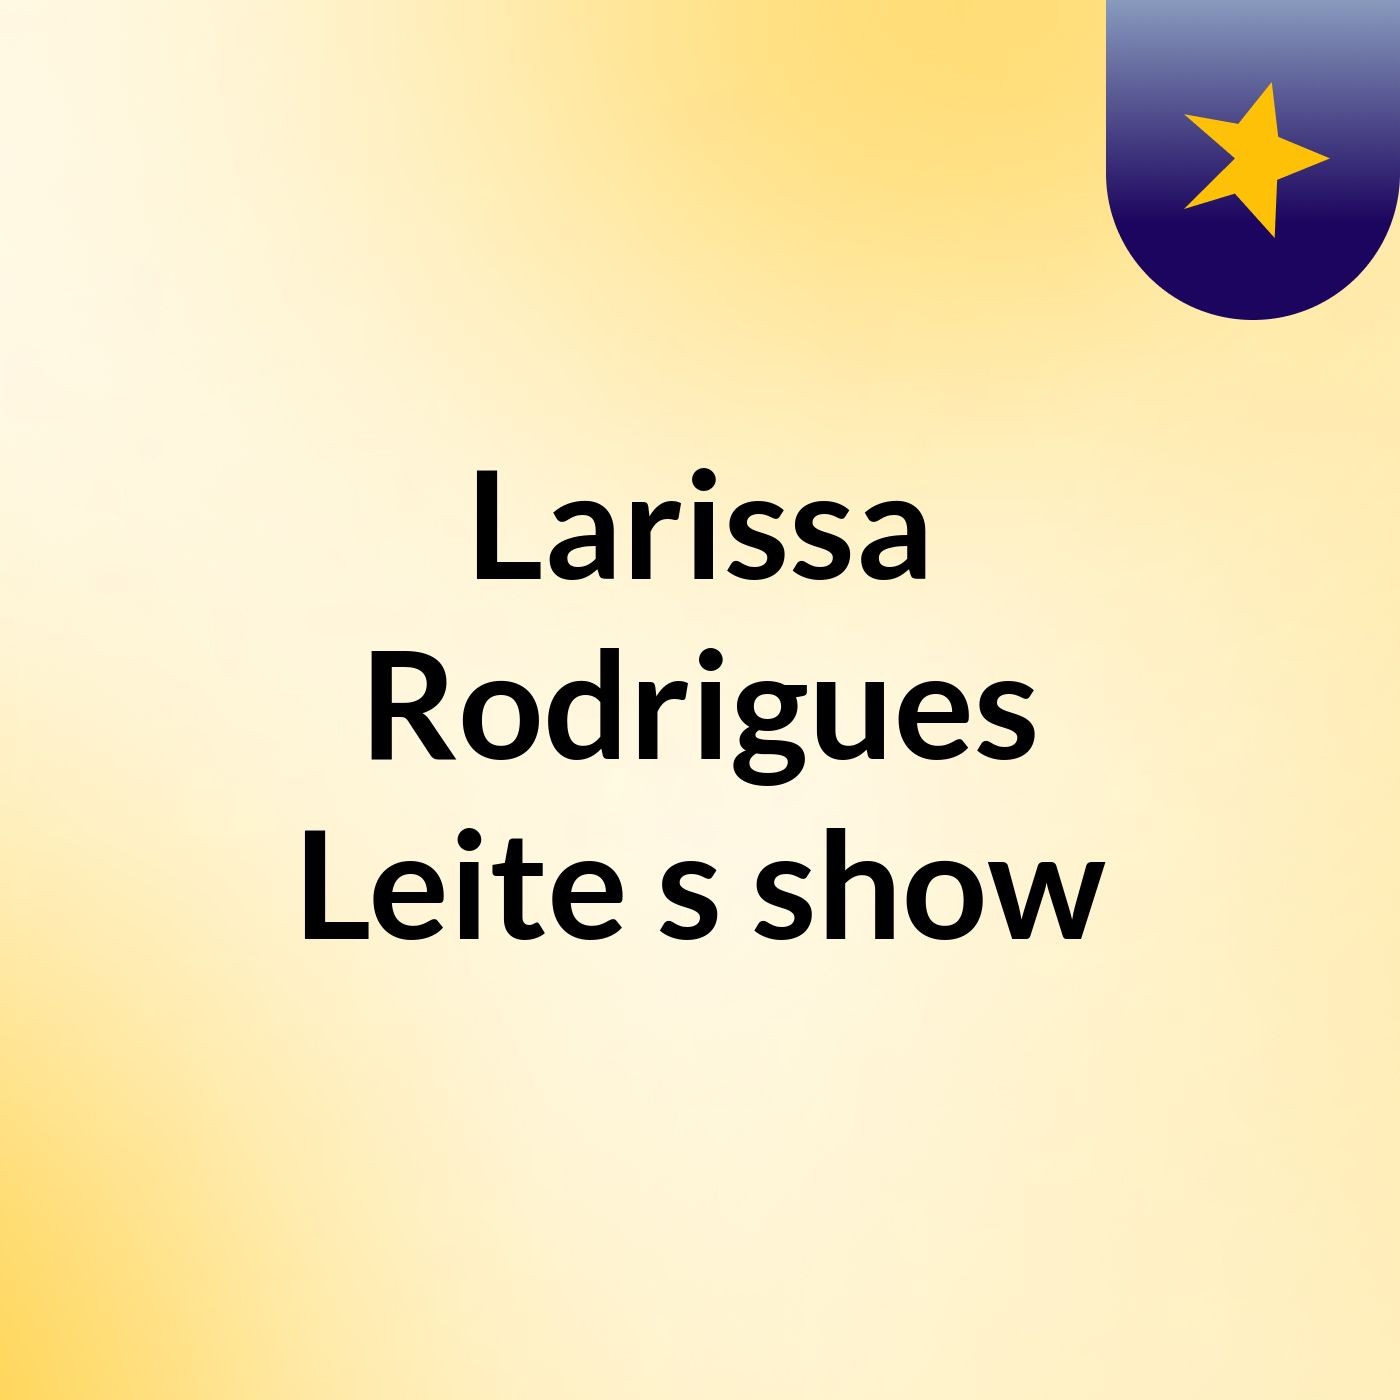 Larissa Rodrigues Leite's show